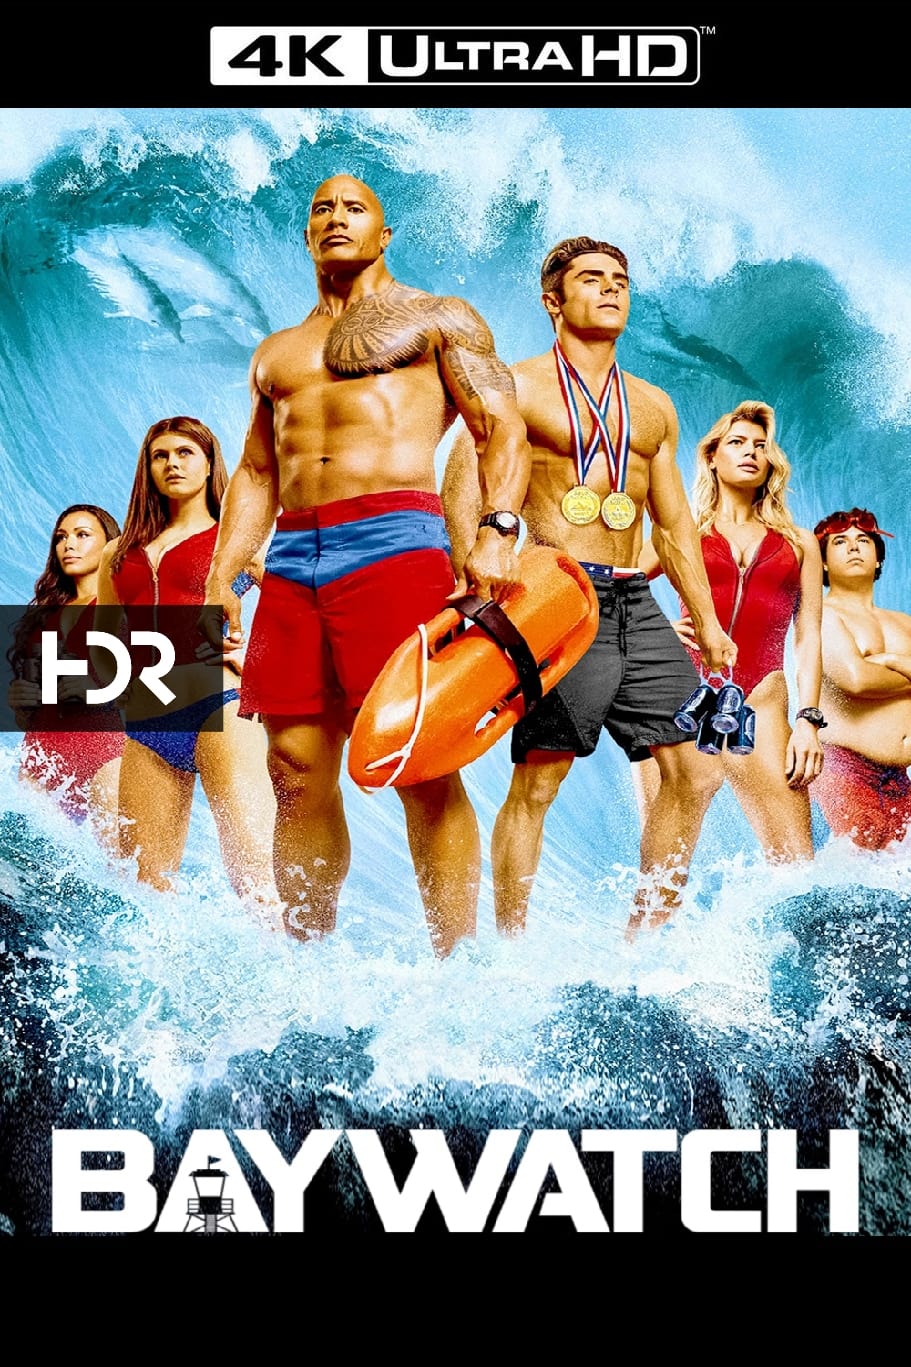 Baywatch Movie poster